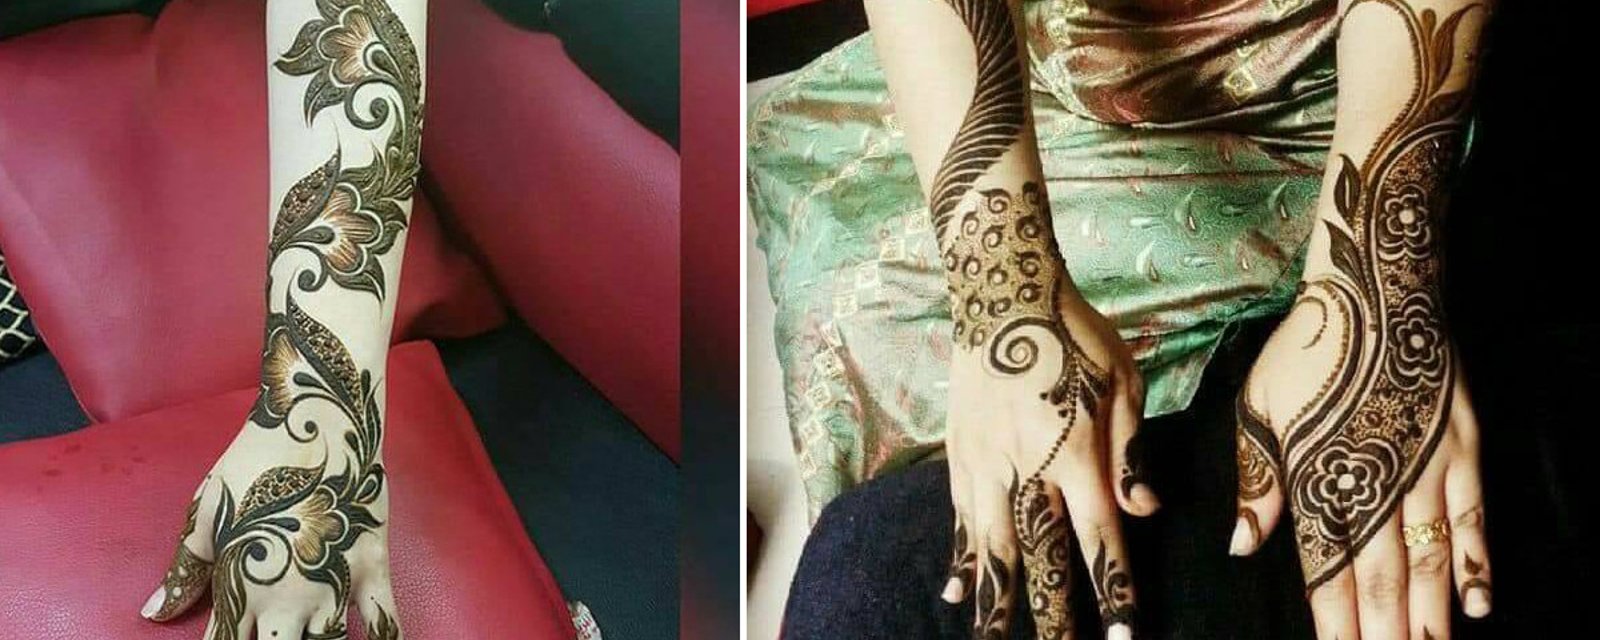 Le henné est un art traditionnel qui gagne en popularité. 18 tatouages au henné qui vous inspireront.